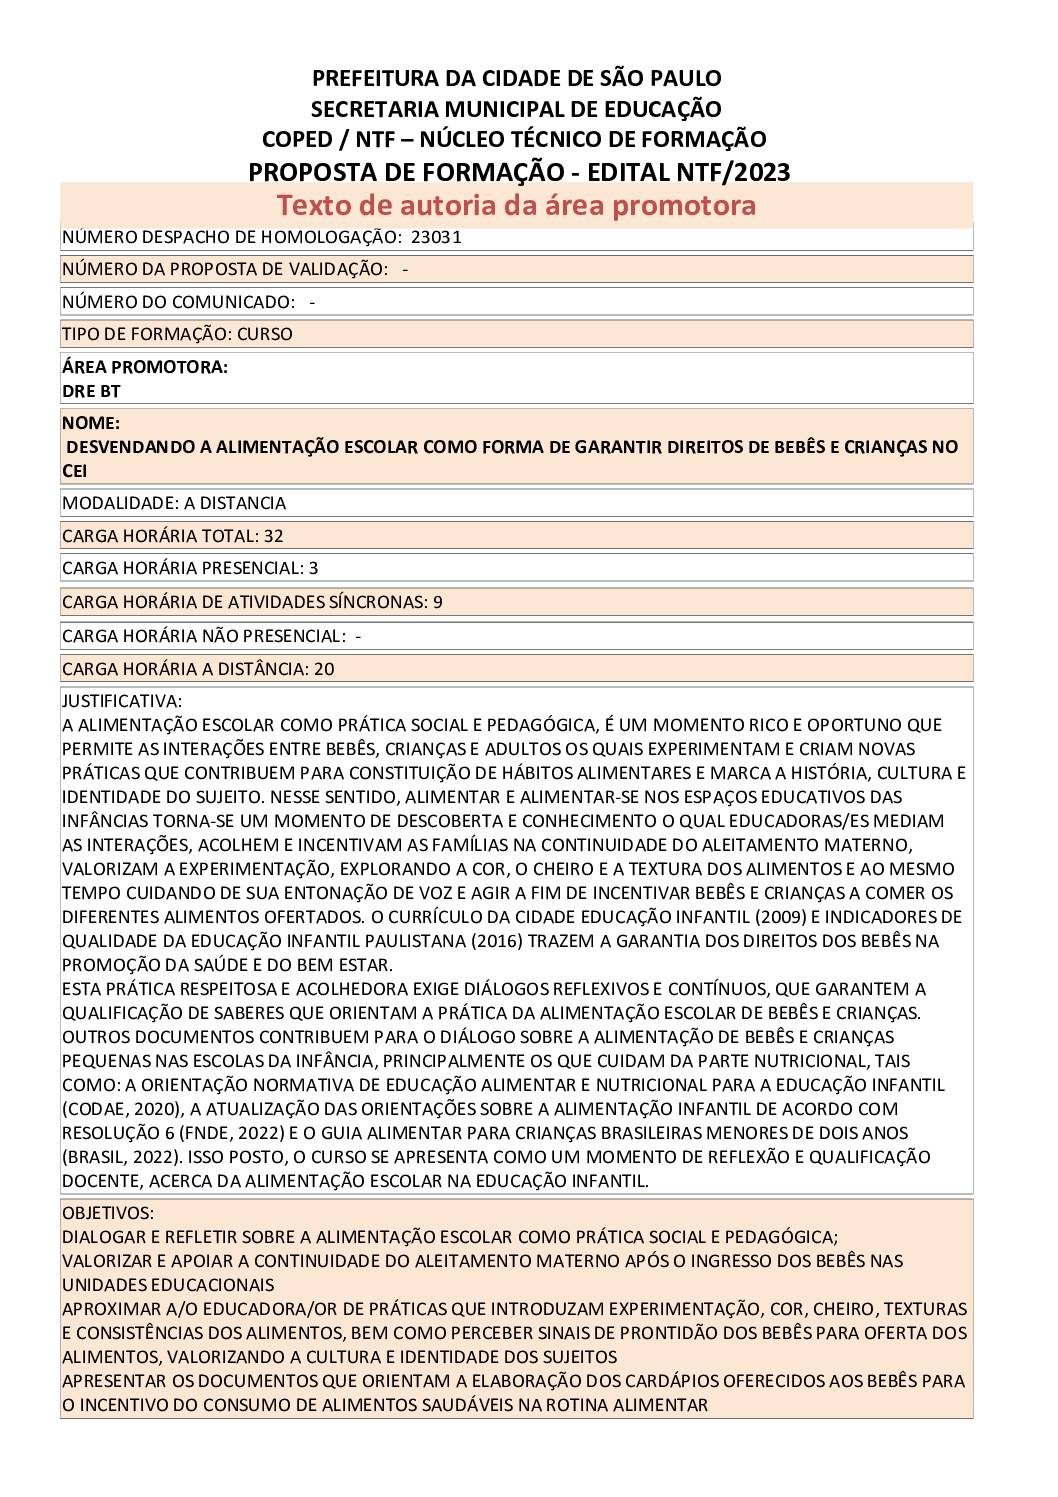 PDF com informações sobre o curso: DESVENDANDO A ALIMENTAÇÃO ESCOLAR COMO FORMA DE GARANTIR DIREITOS DE BEBÊS E CRIANÇAS NO CEI